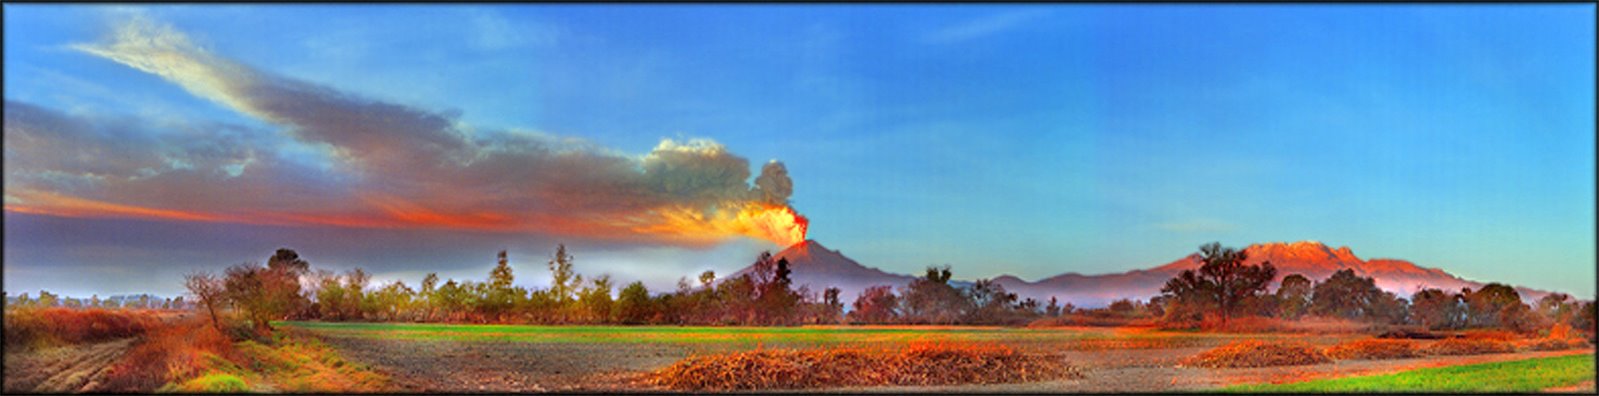 Volcán Popocatépetl (s/f)